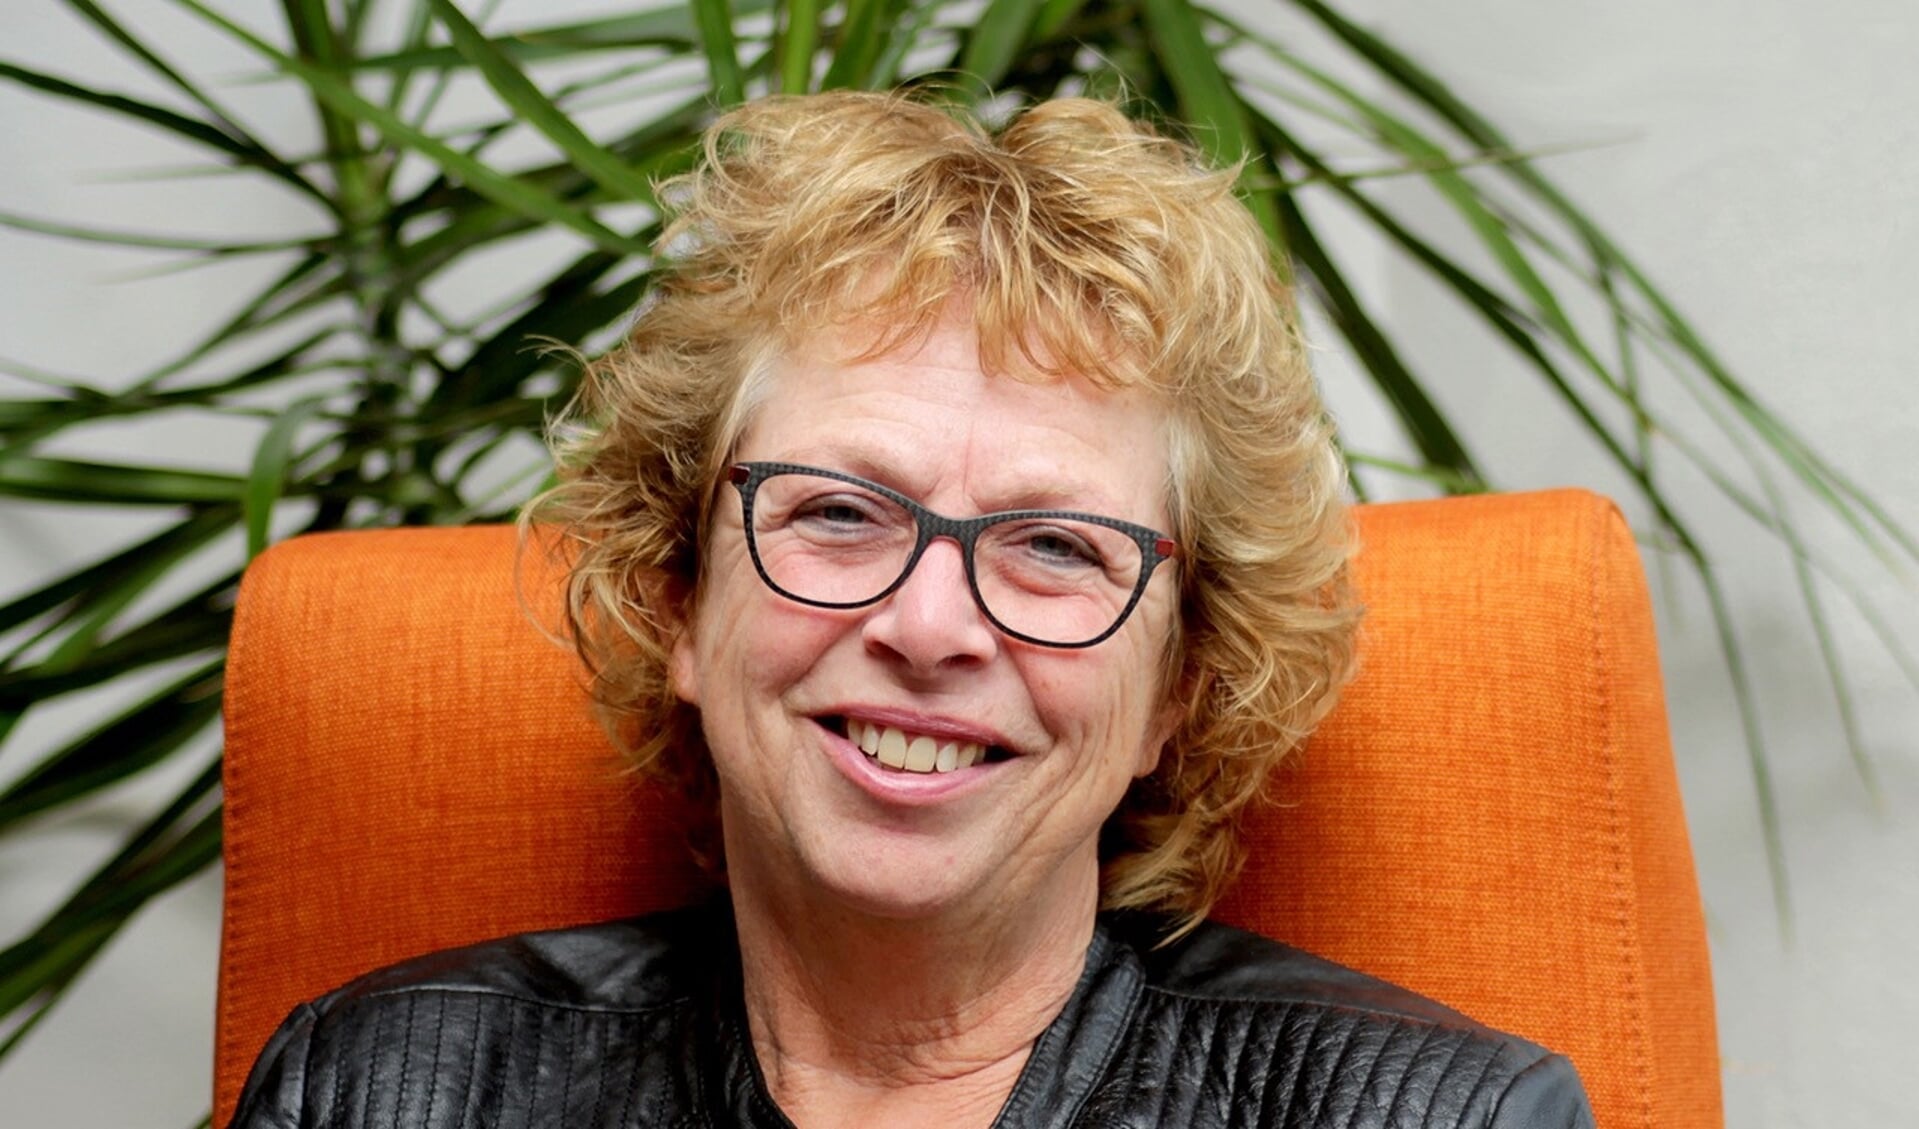 Helga Zöllner runt haar eigen coachings- en therapiepraktijk. (foto en tekst: Kees de Bruijn)